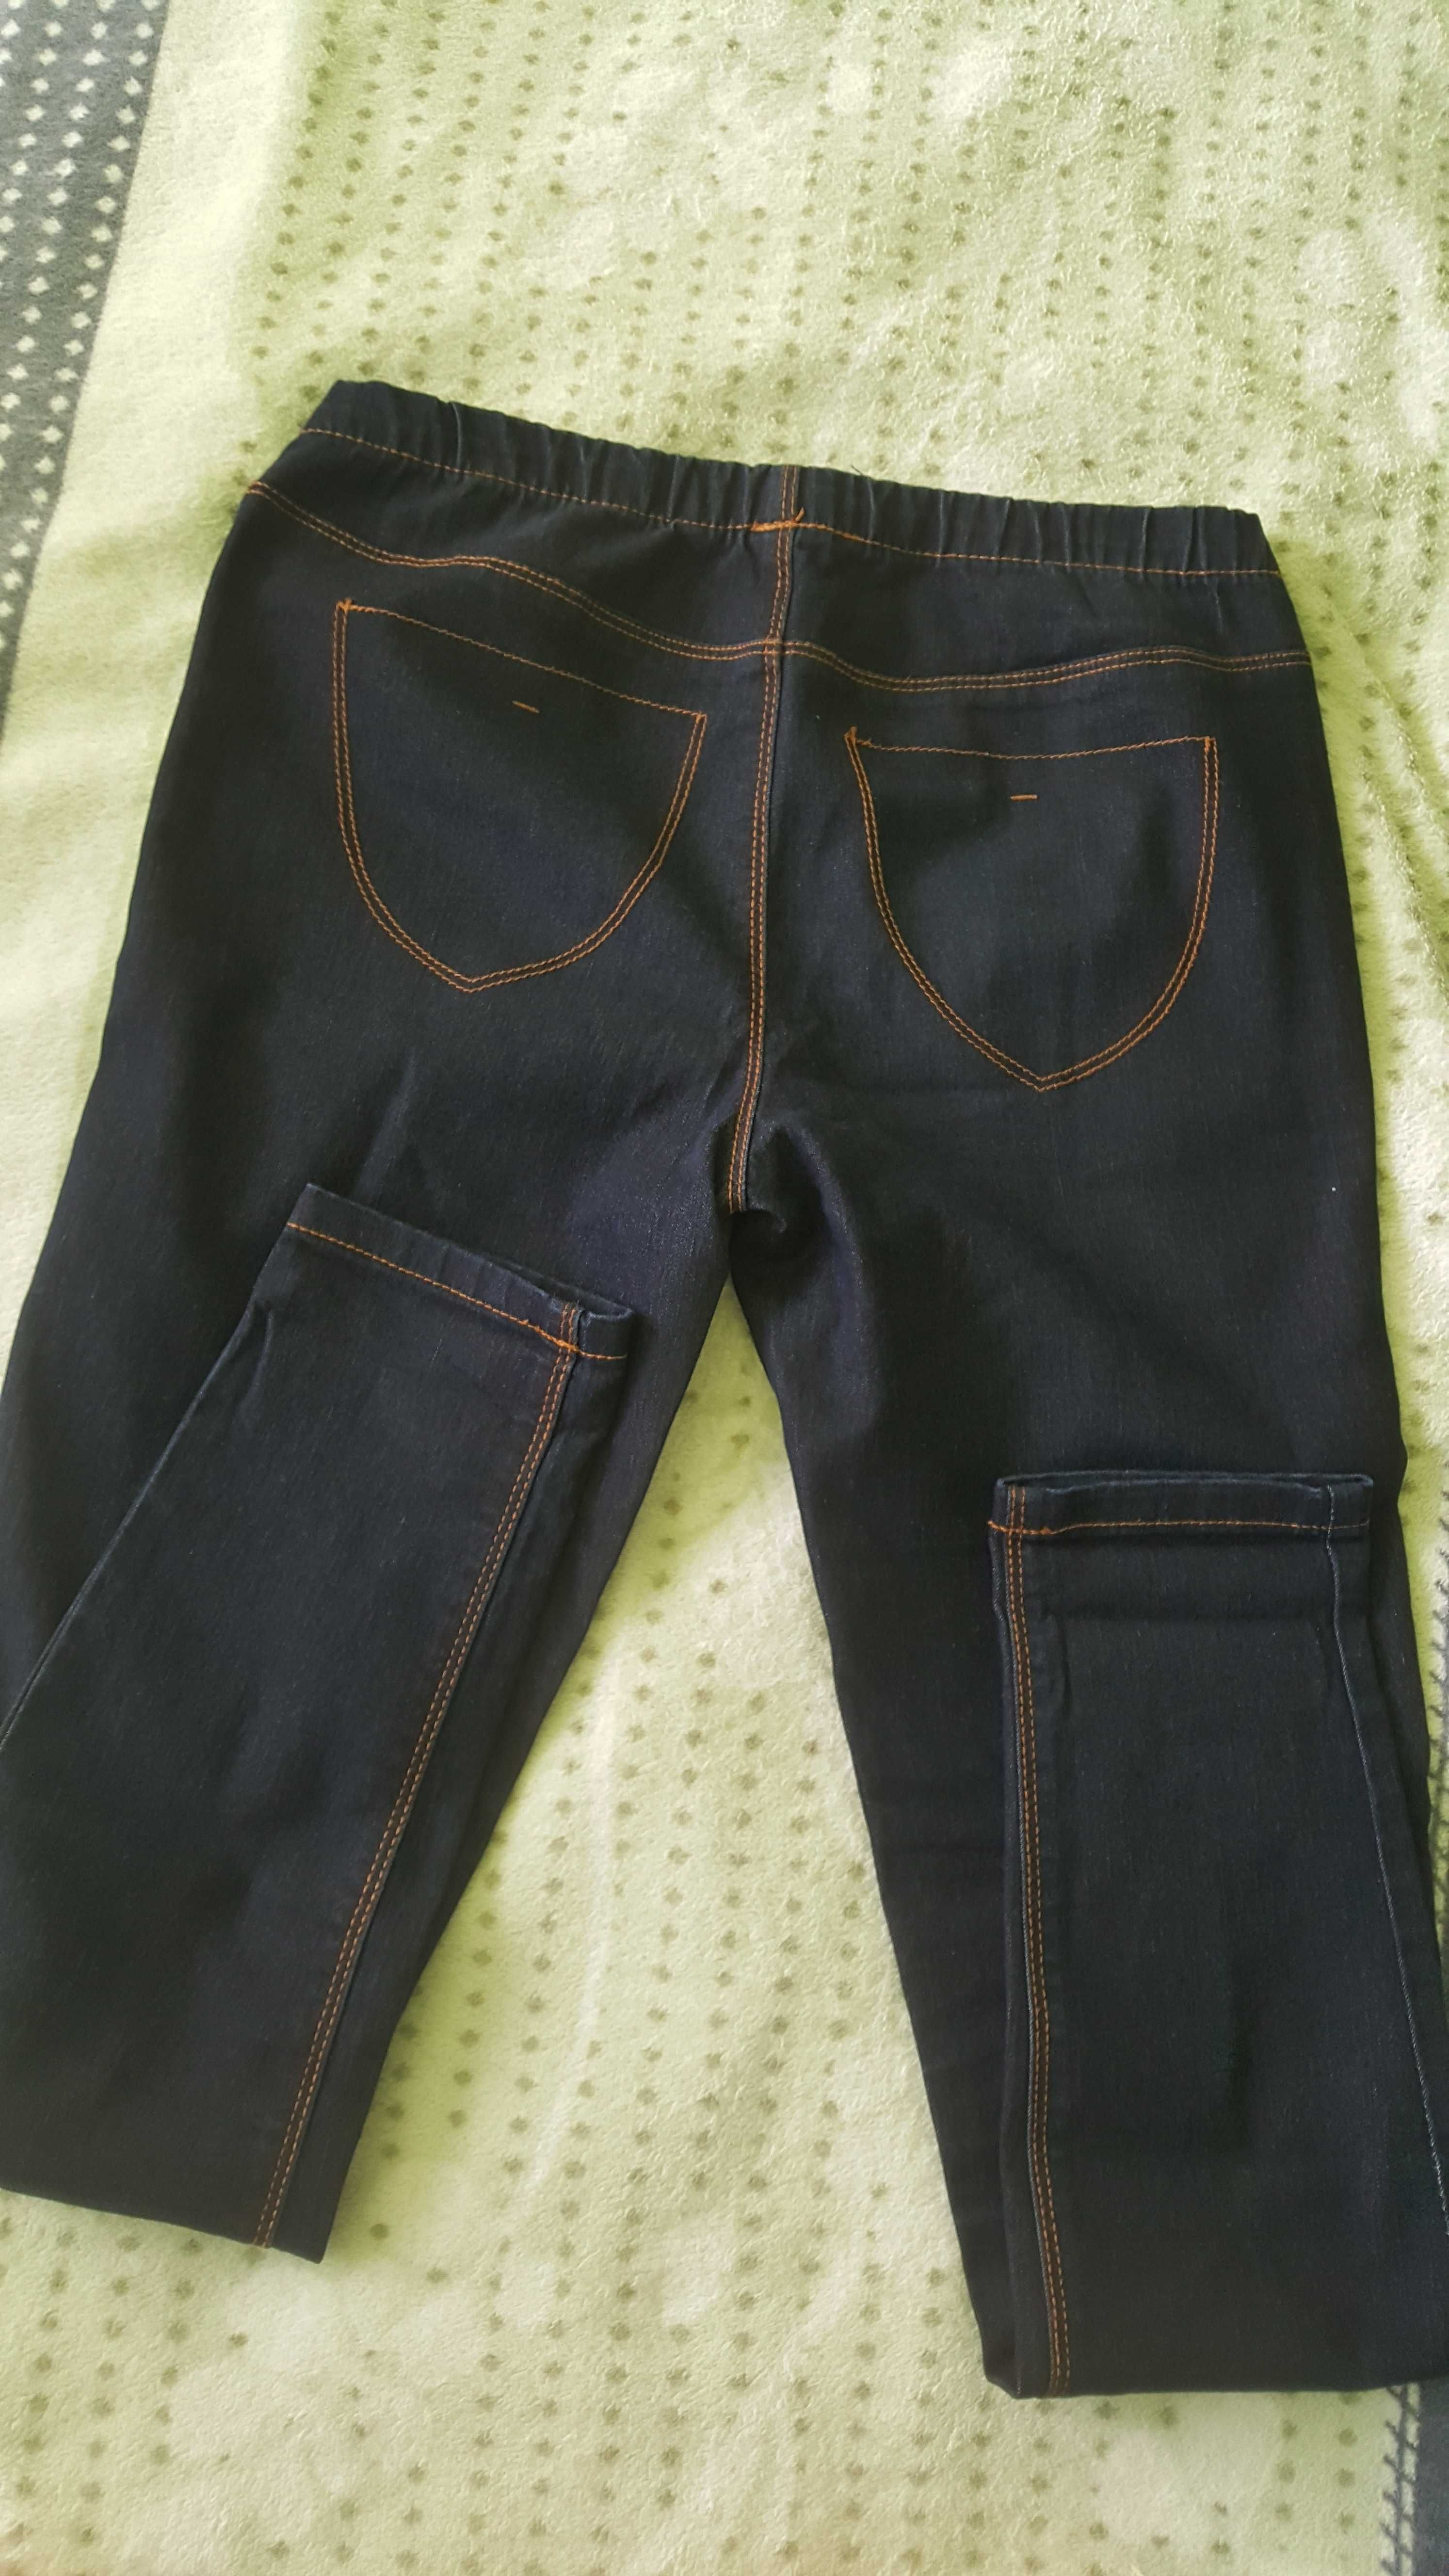 Jegginsy damskie spodnie dżinsowe na gumce Rozmiar S. Jak nowe C&A